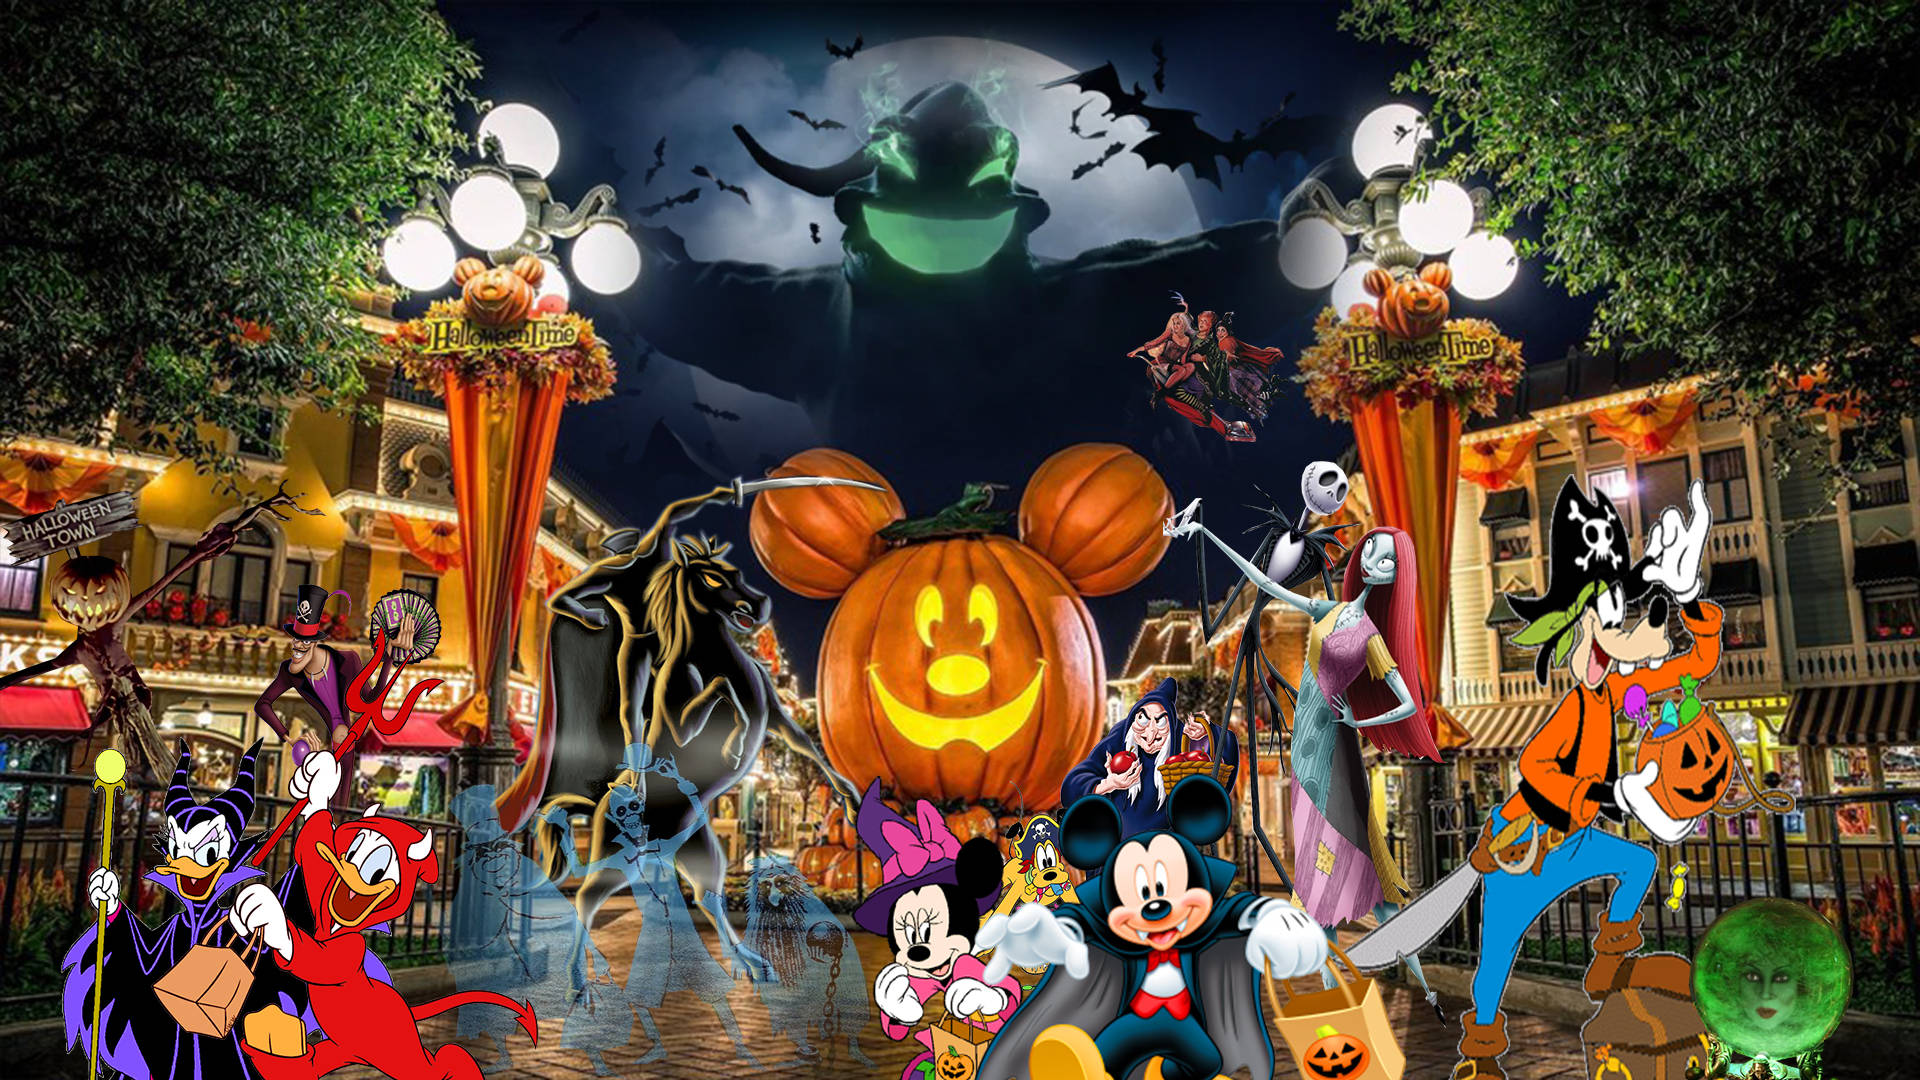 Sötdisney Halloween-gjutning I Disneyland. Wallpaper